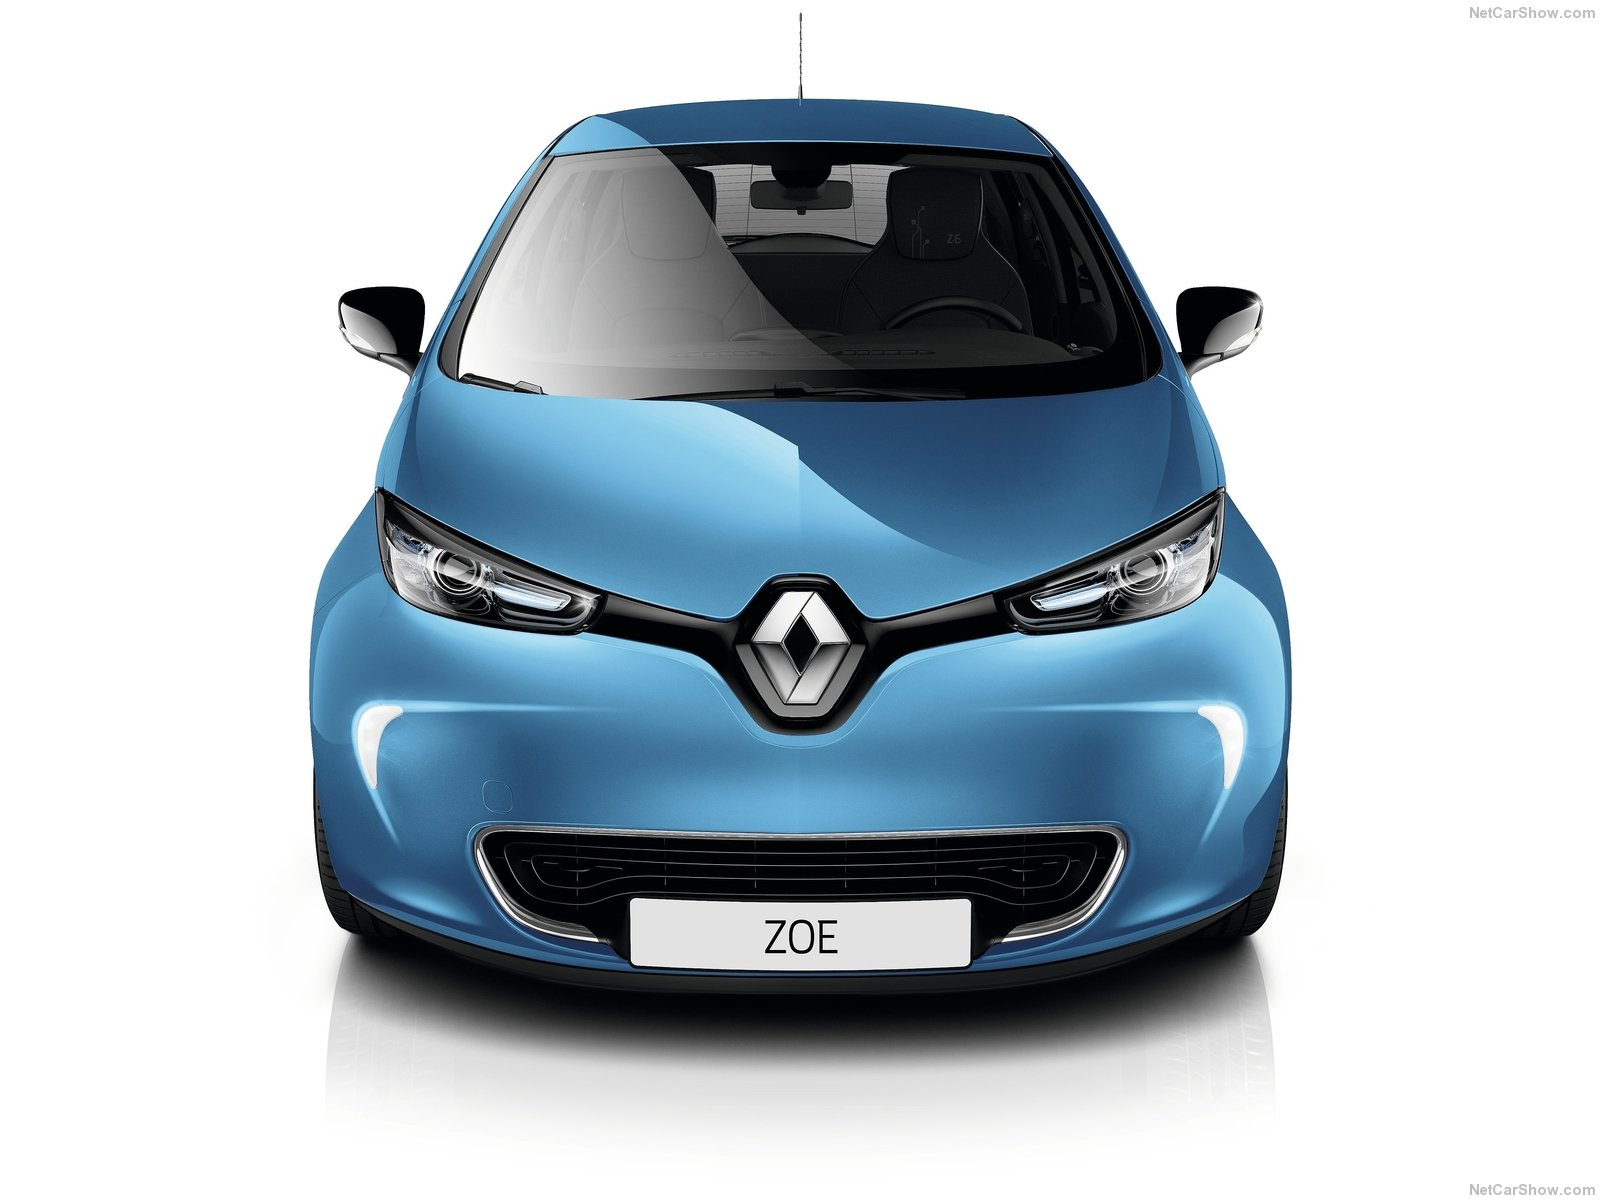 Renault Zoe front view